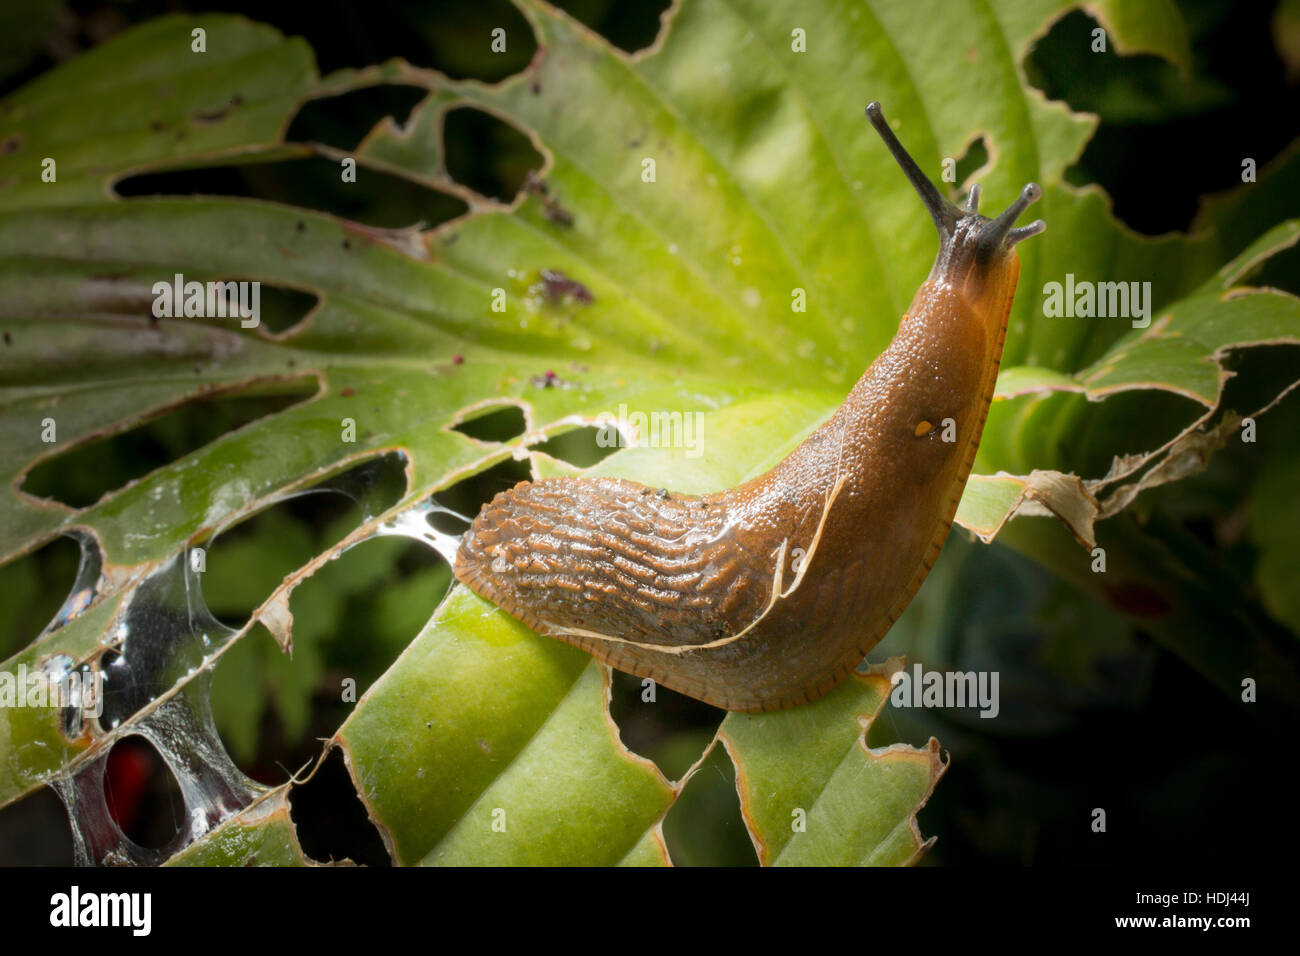 Uno slug su uno slug-danneggiato hosta foglia in un giardino di Londra. Foto Stock